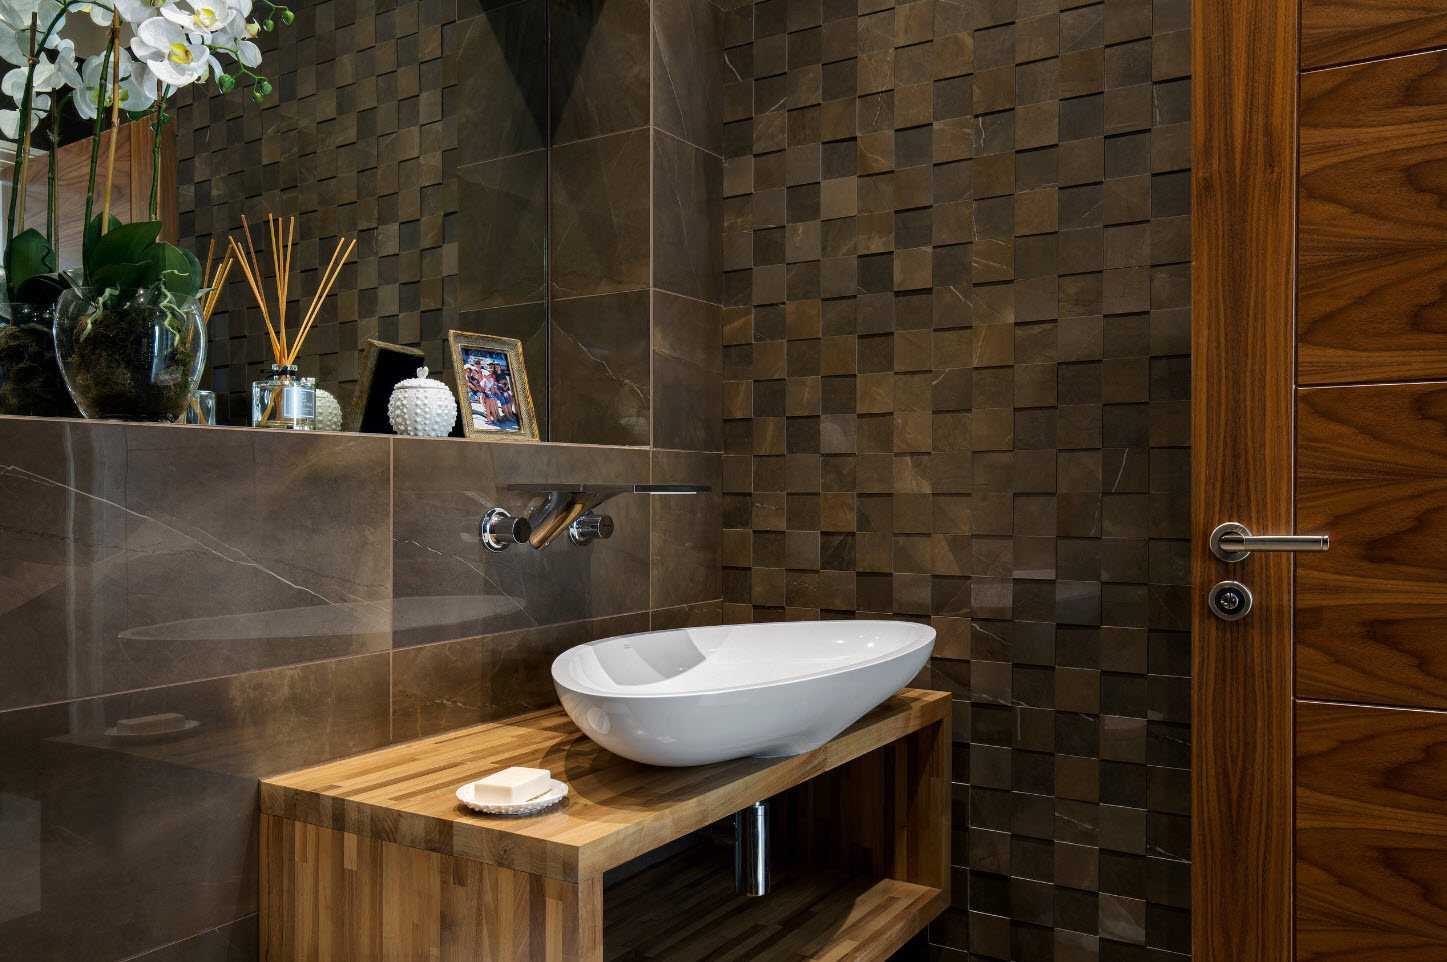 Полки в ванной комнате дизайн для шампуней